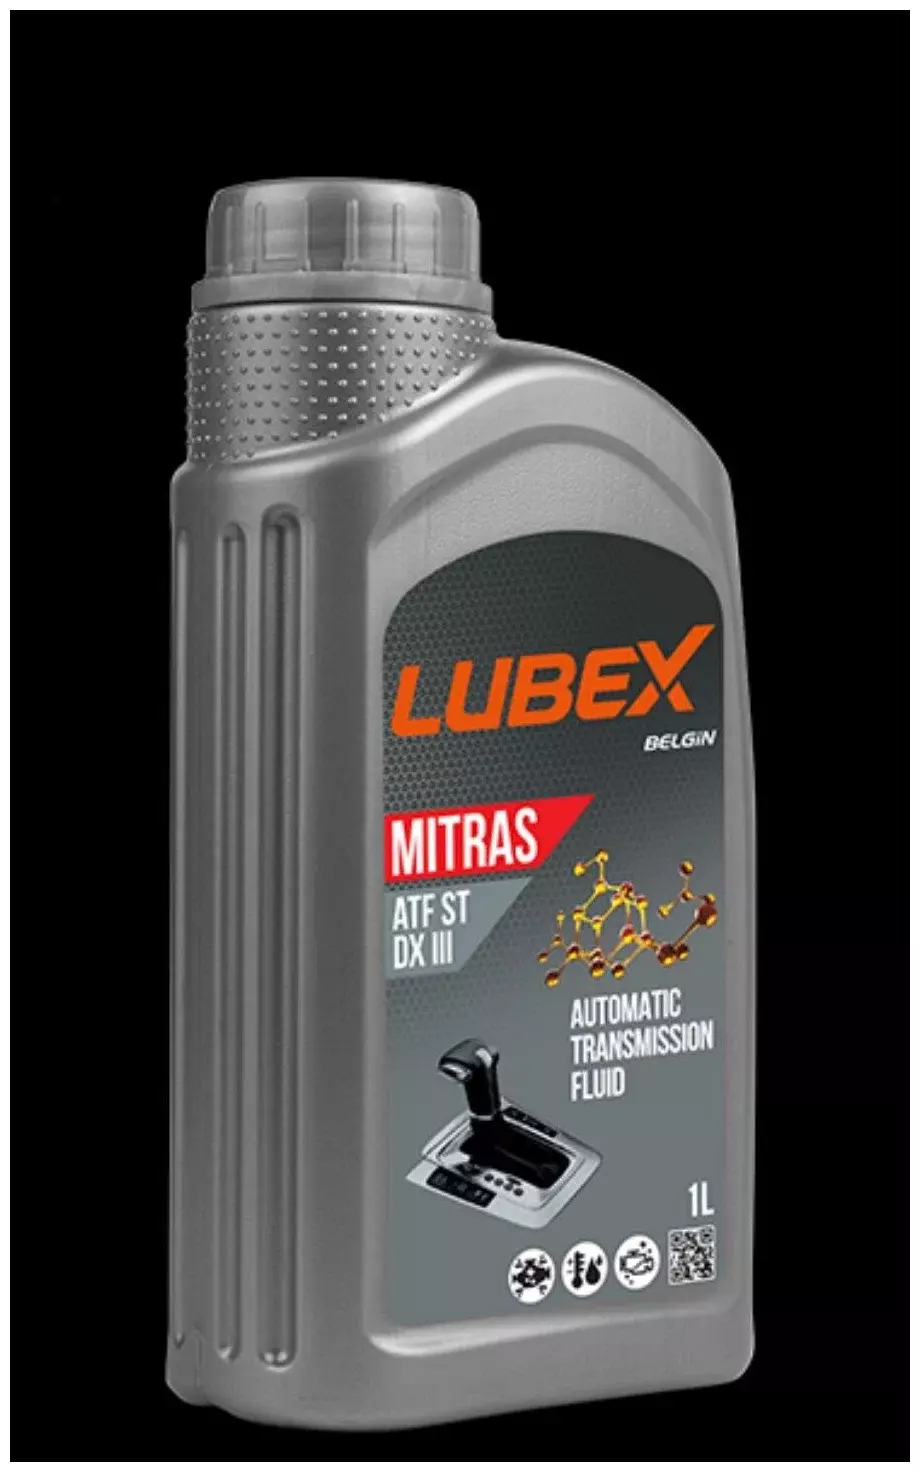 Масло трансмиссионное LUBEX MITRAS ATF ST DX III, 1л